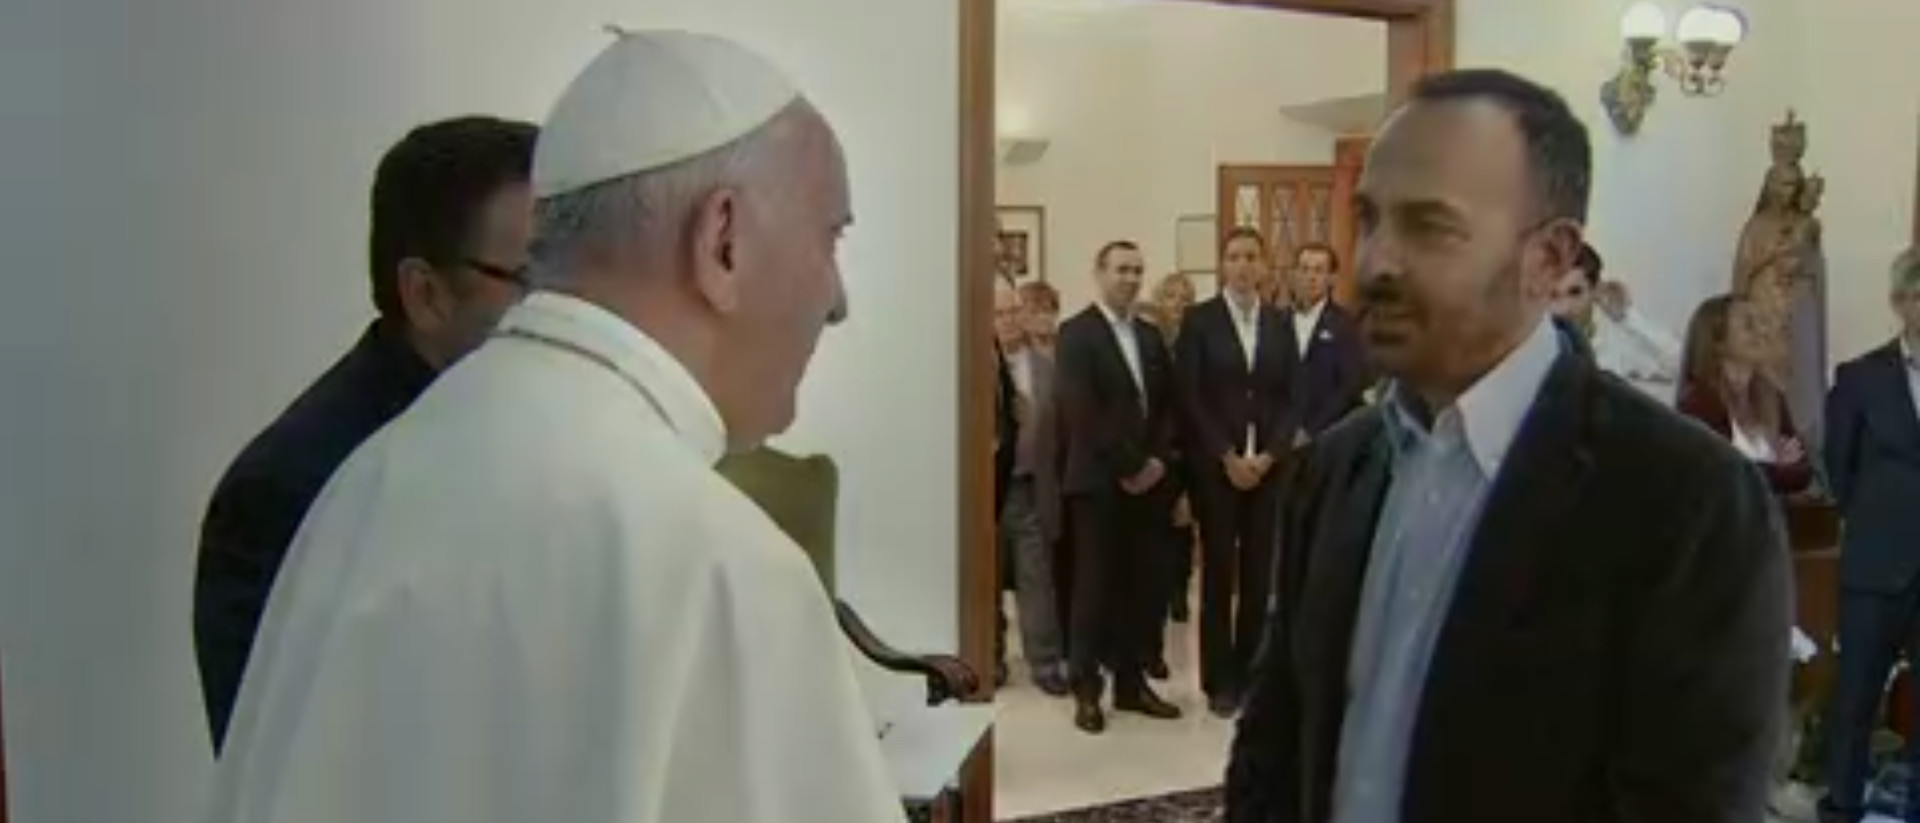 Eine einschneidende Begegnung: Der Vater einer Regenbogenfamilie trifft auf Papst Franziskus.